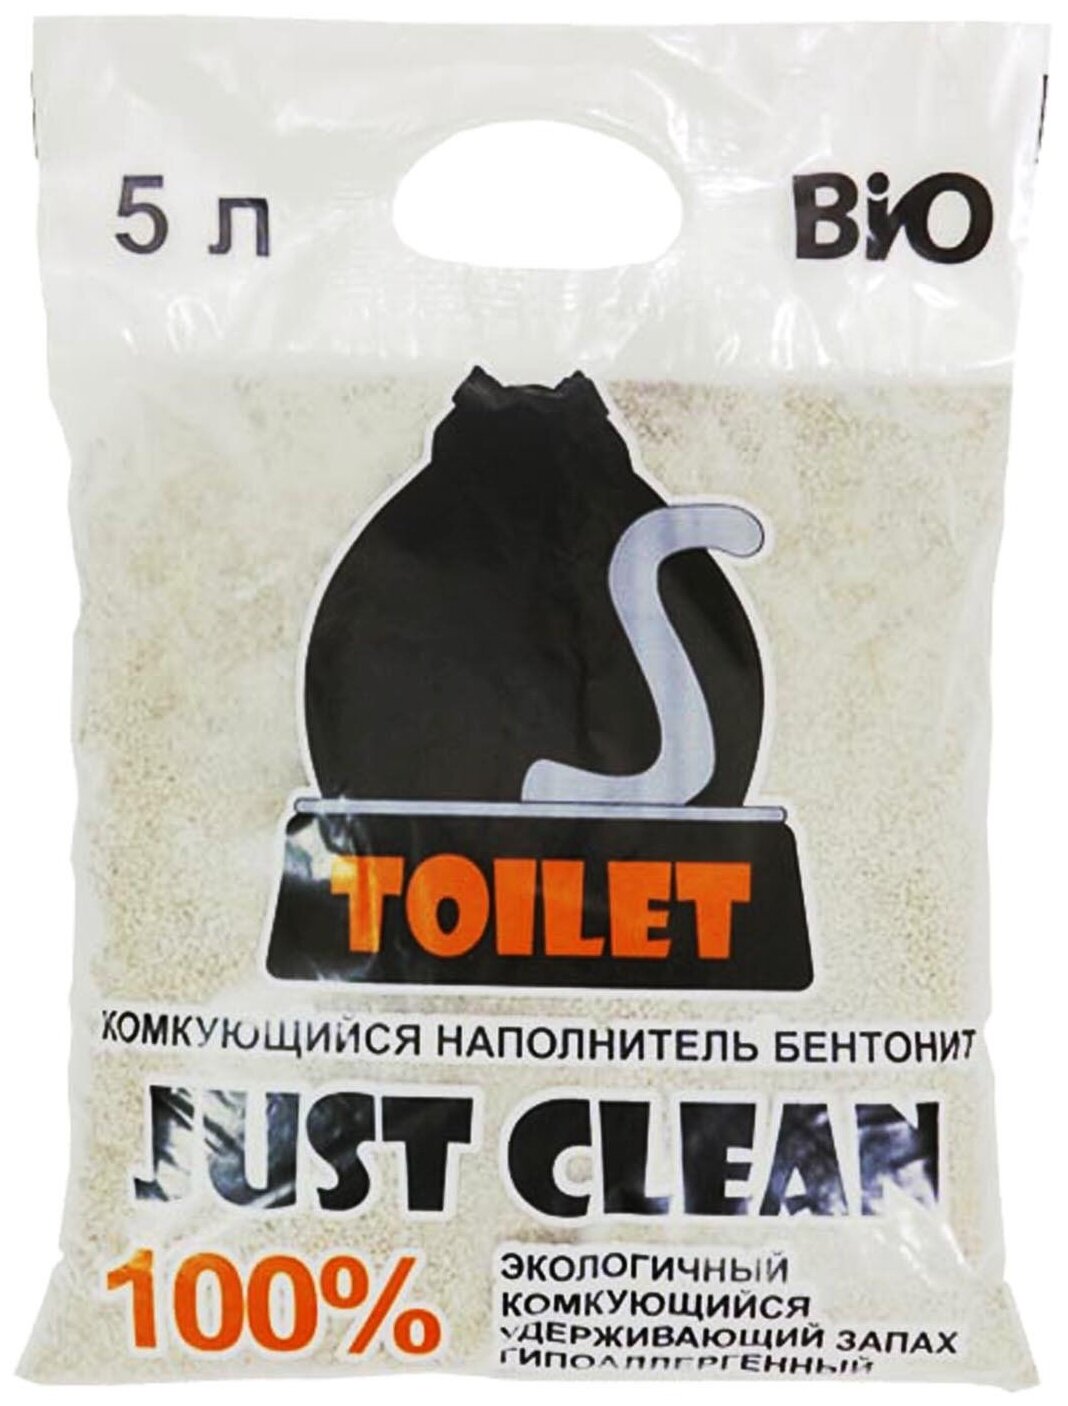 Наполнитель для кошачьего туалета бетонит, комкующийся, гипоаллегренный, удерживает запах, объем 5 литров. Цена за 1 мешок. - фотография № 1